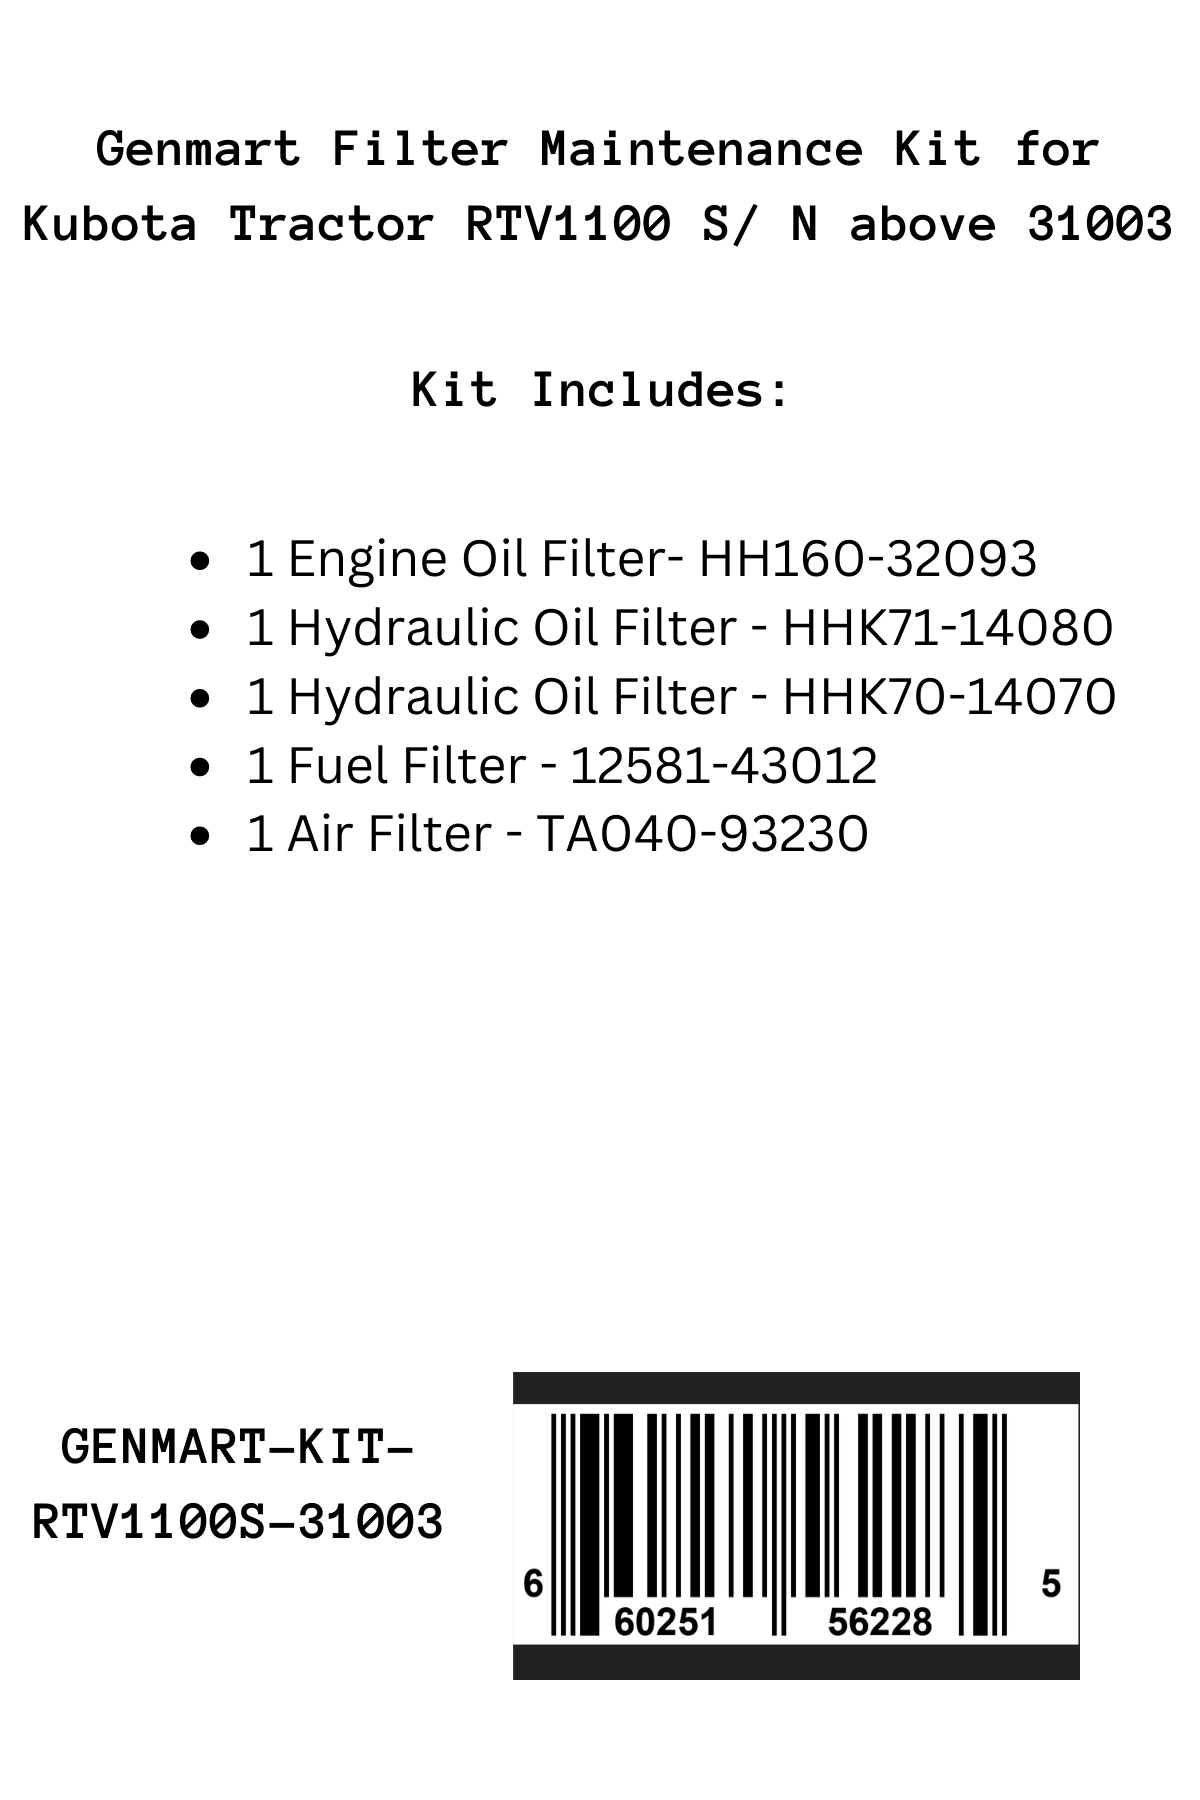 Genmart Maintenance Kit for Kubota Tractor RTV1100 (Above 31003)